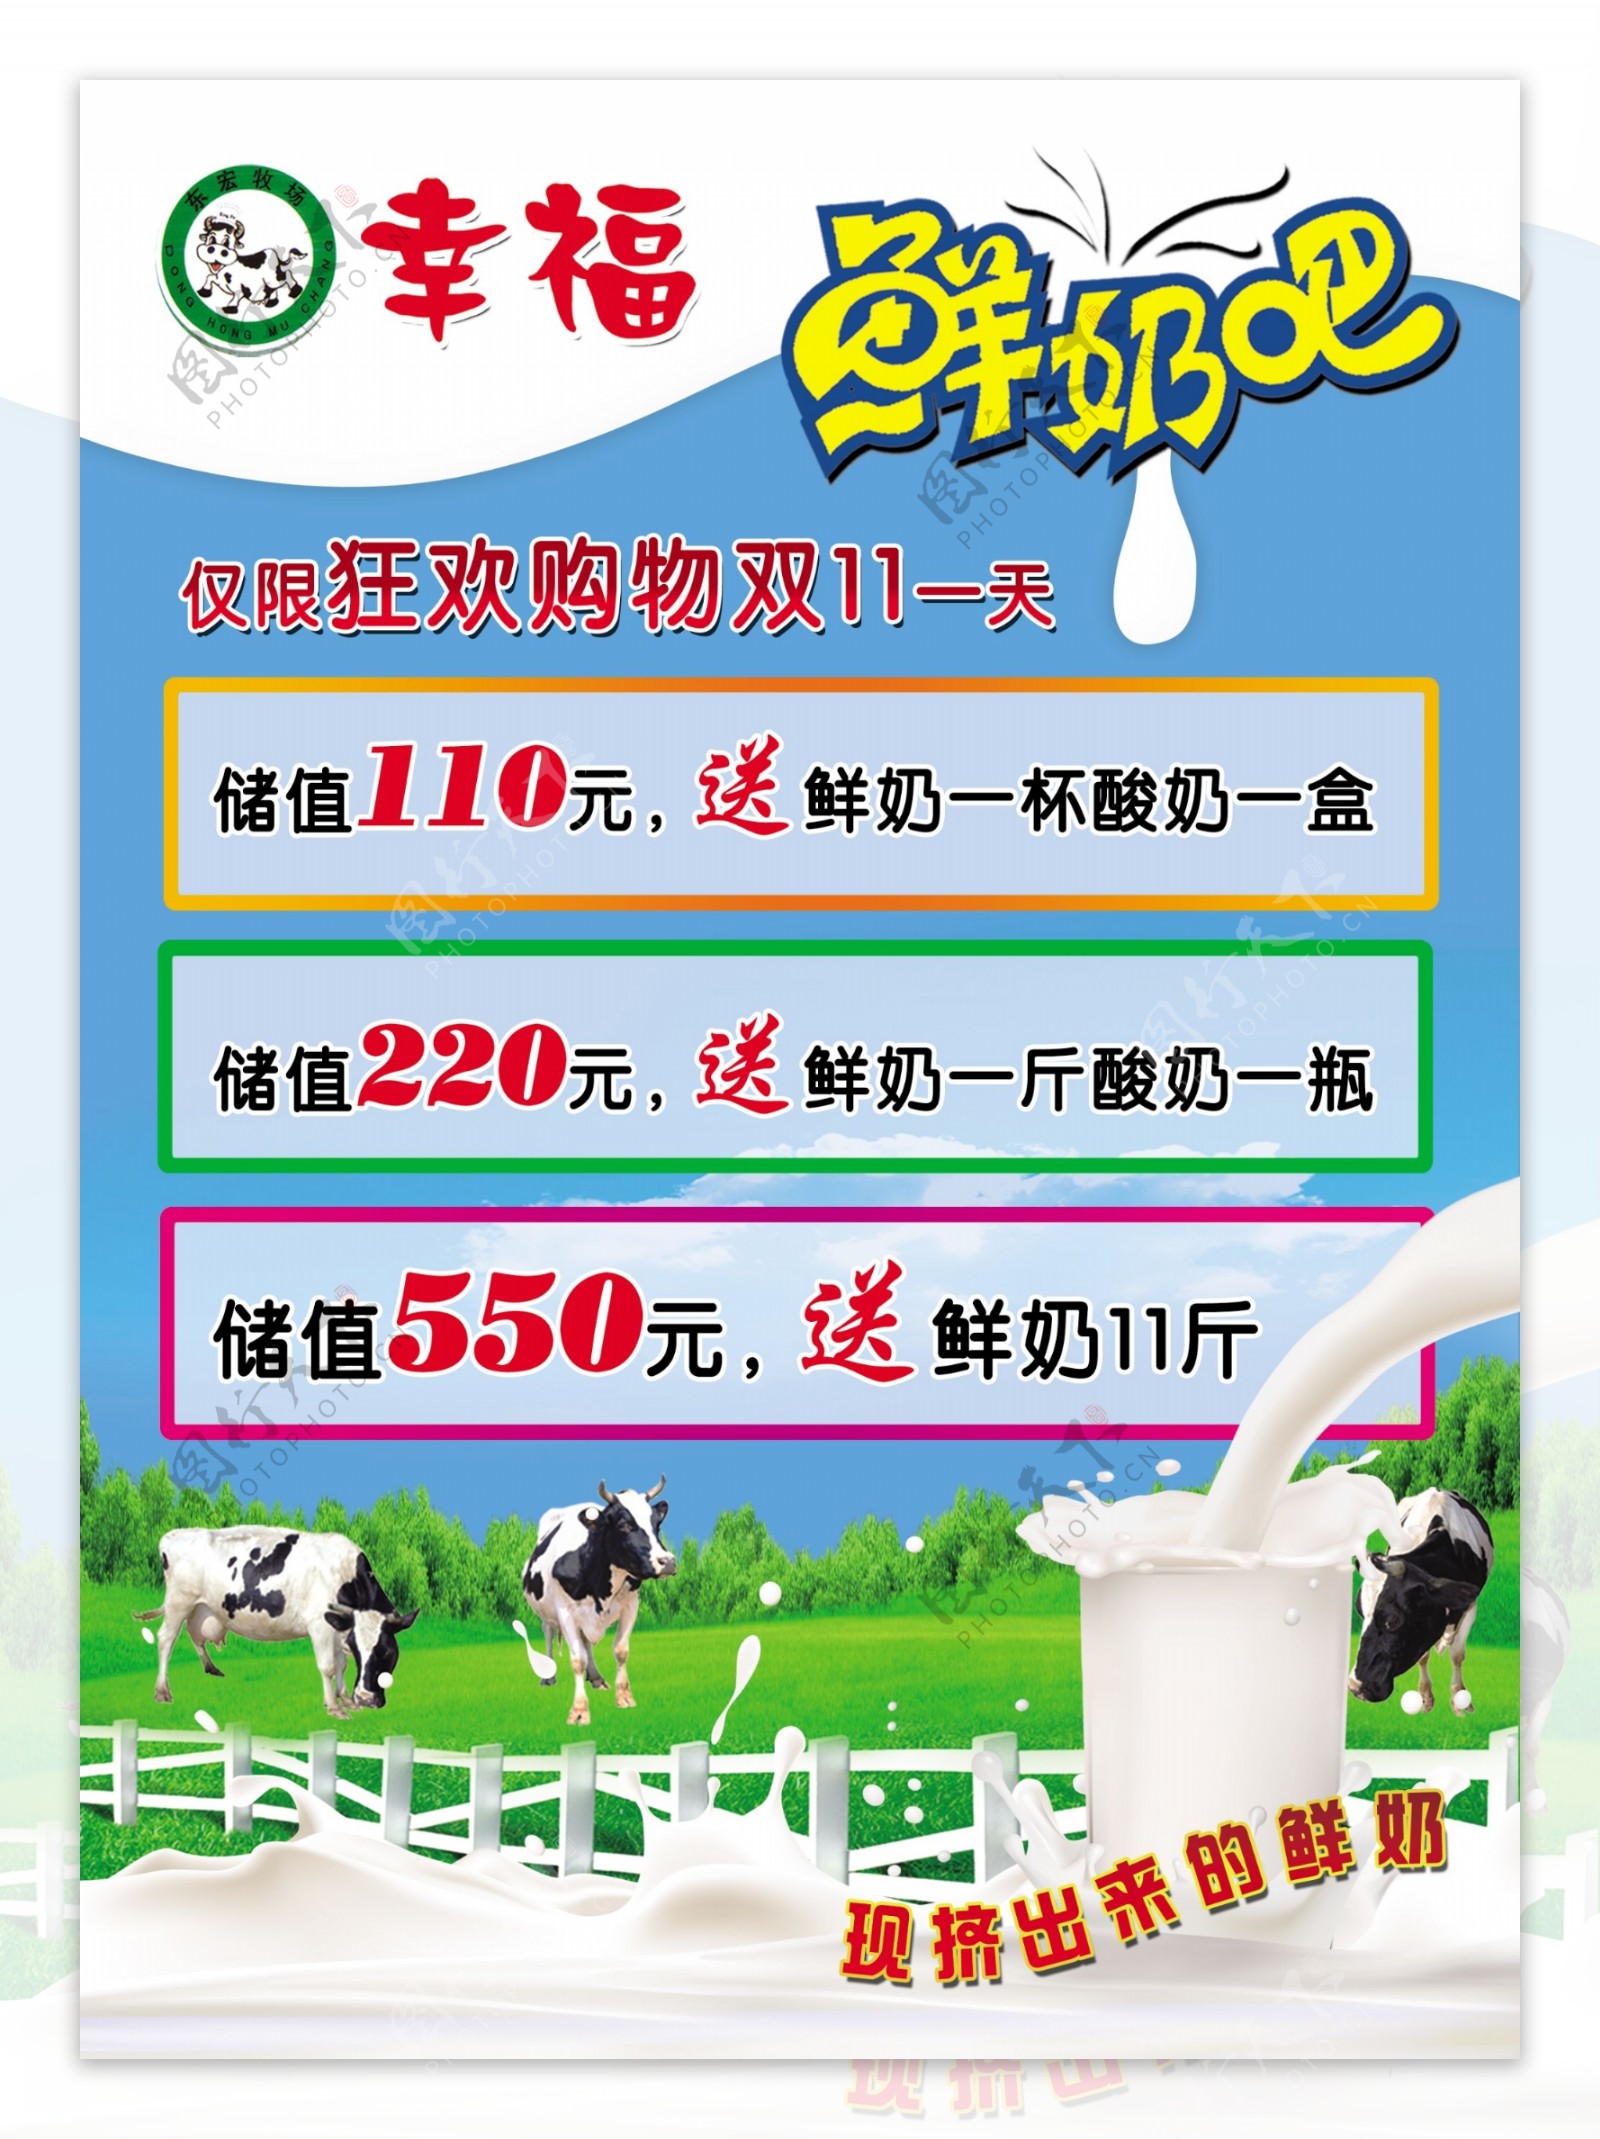 幸福鲜奶吧宣传广告图片